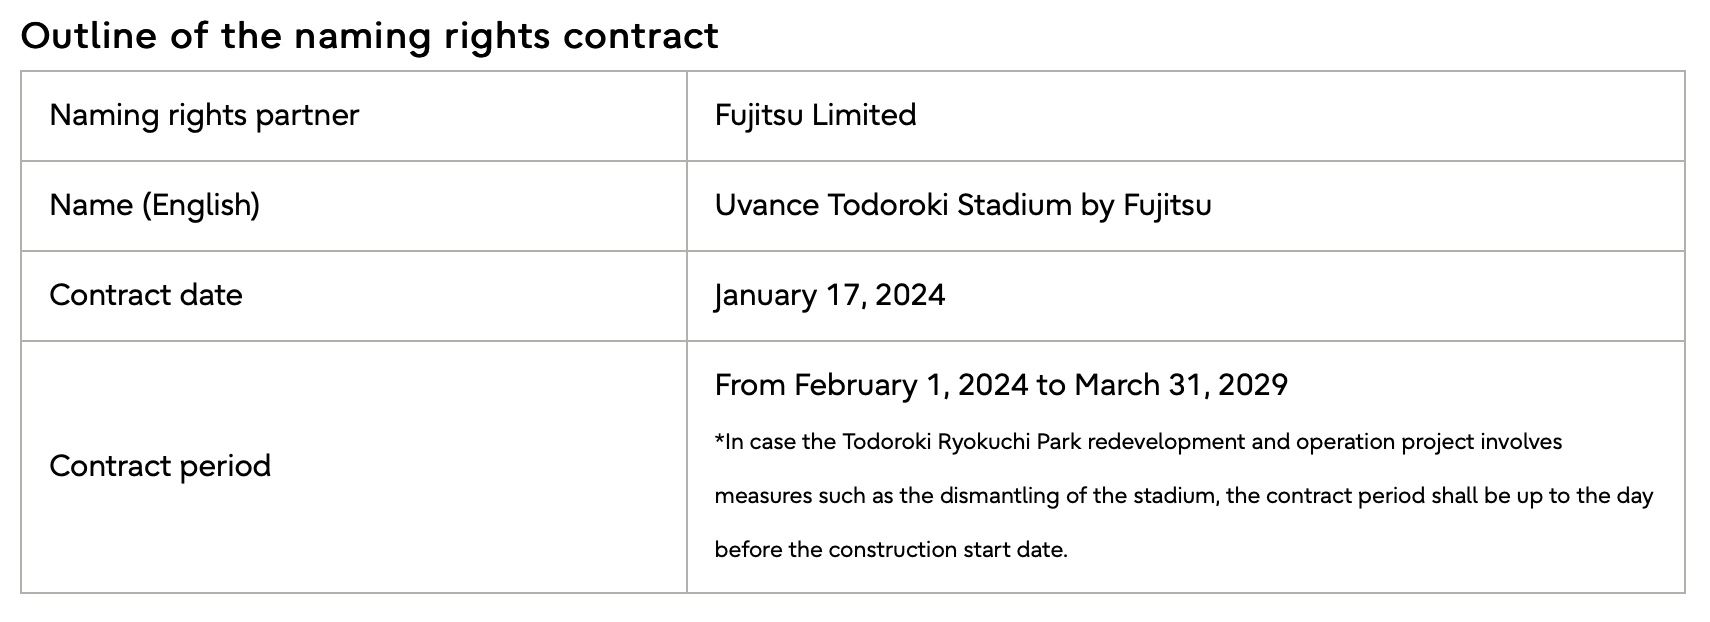 فوجیتسو قرارداد حقوق نامگذاری ورزشگاه تودوروکی را امضا کرد